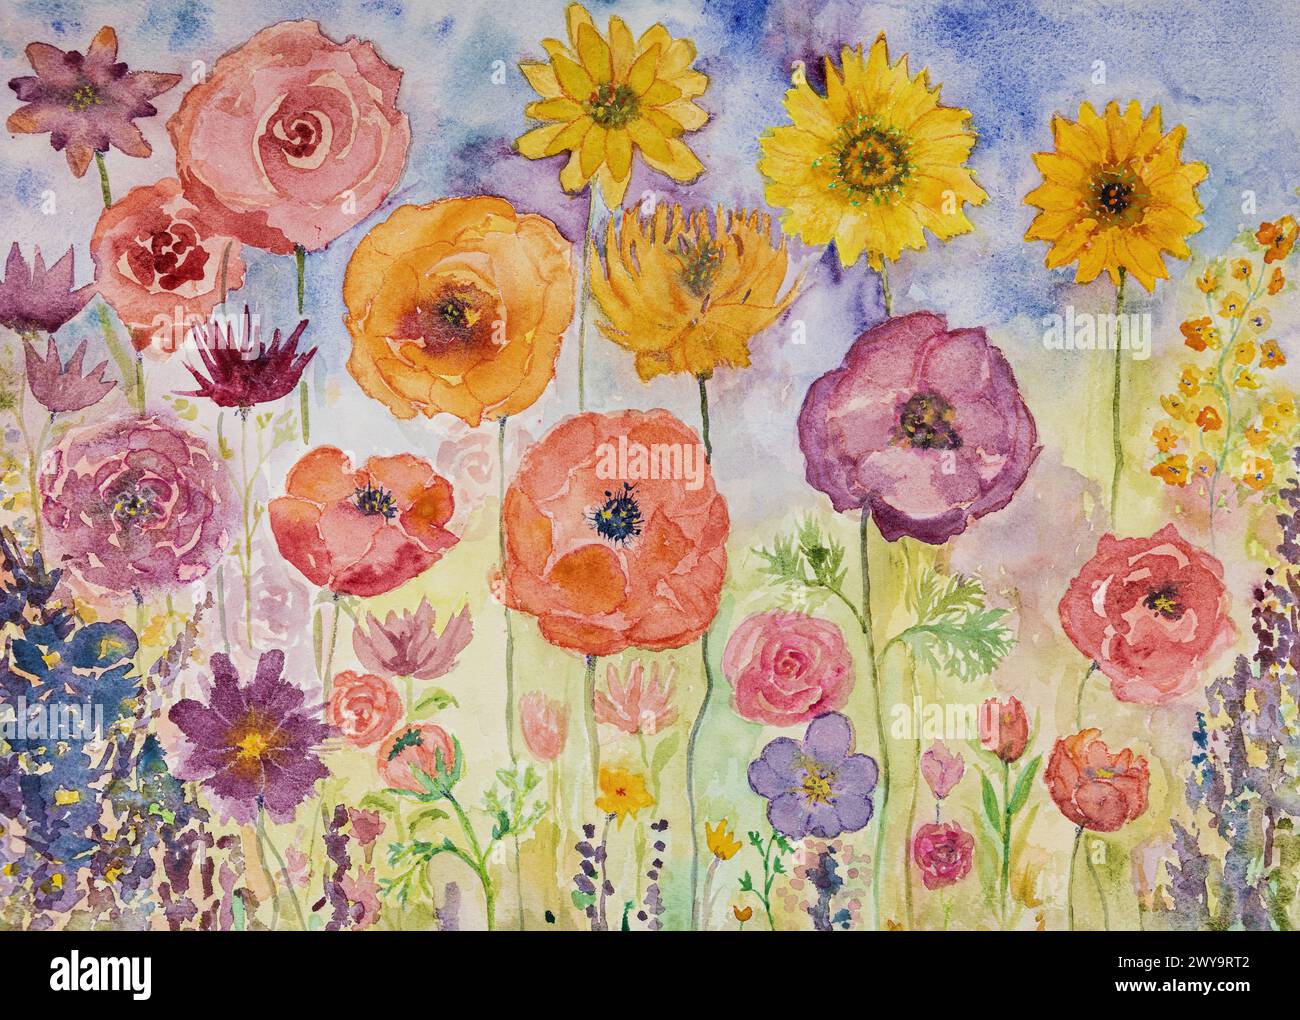 Peinture de jardin fleuri en été. La technique de tamponnage près des bords donne un effet de flou dû à la rugosité de surface modifiée du papier. Banque D'Images